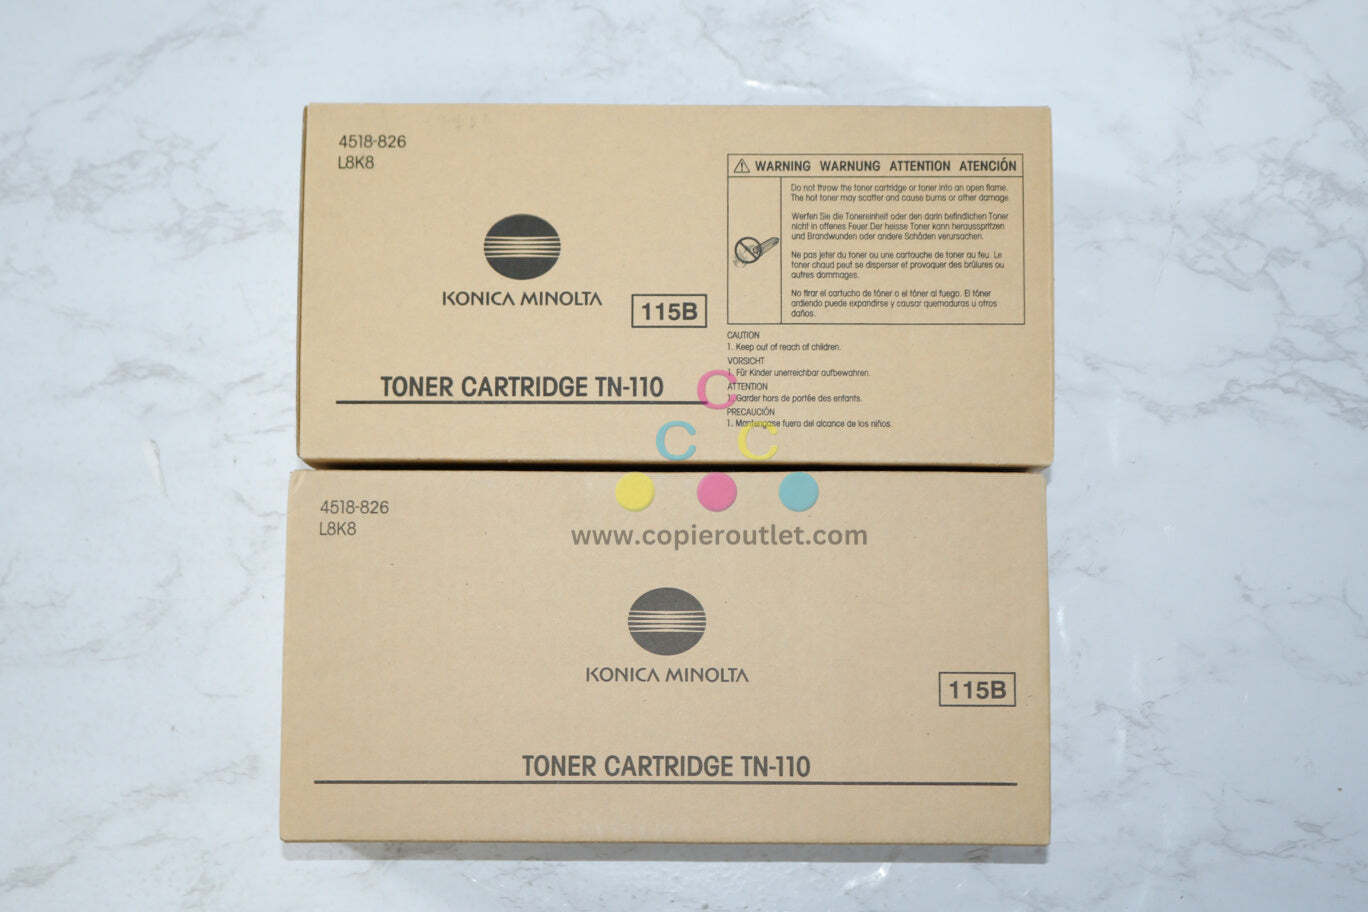 2 New OEM Konica Minolta 2900, 3900 Toner Cartridges TN-110,TN110 (4518-826)